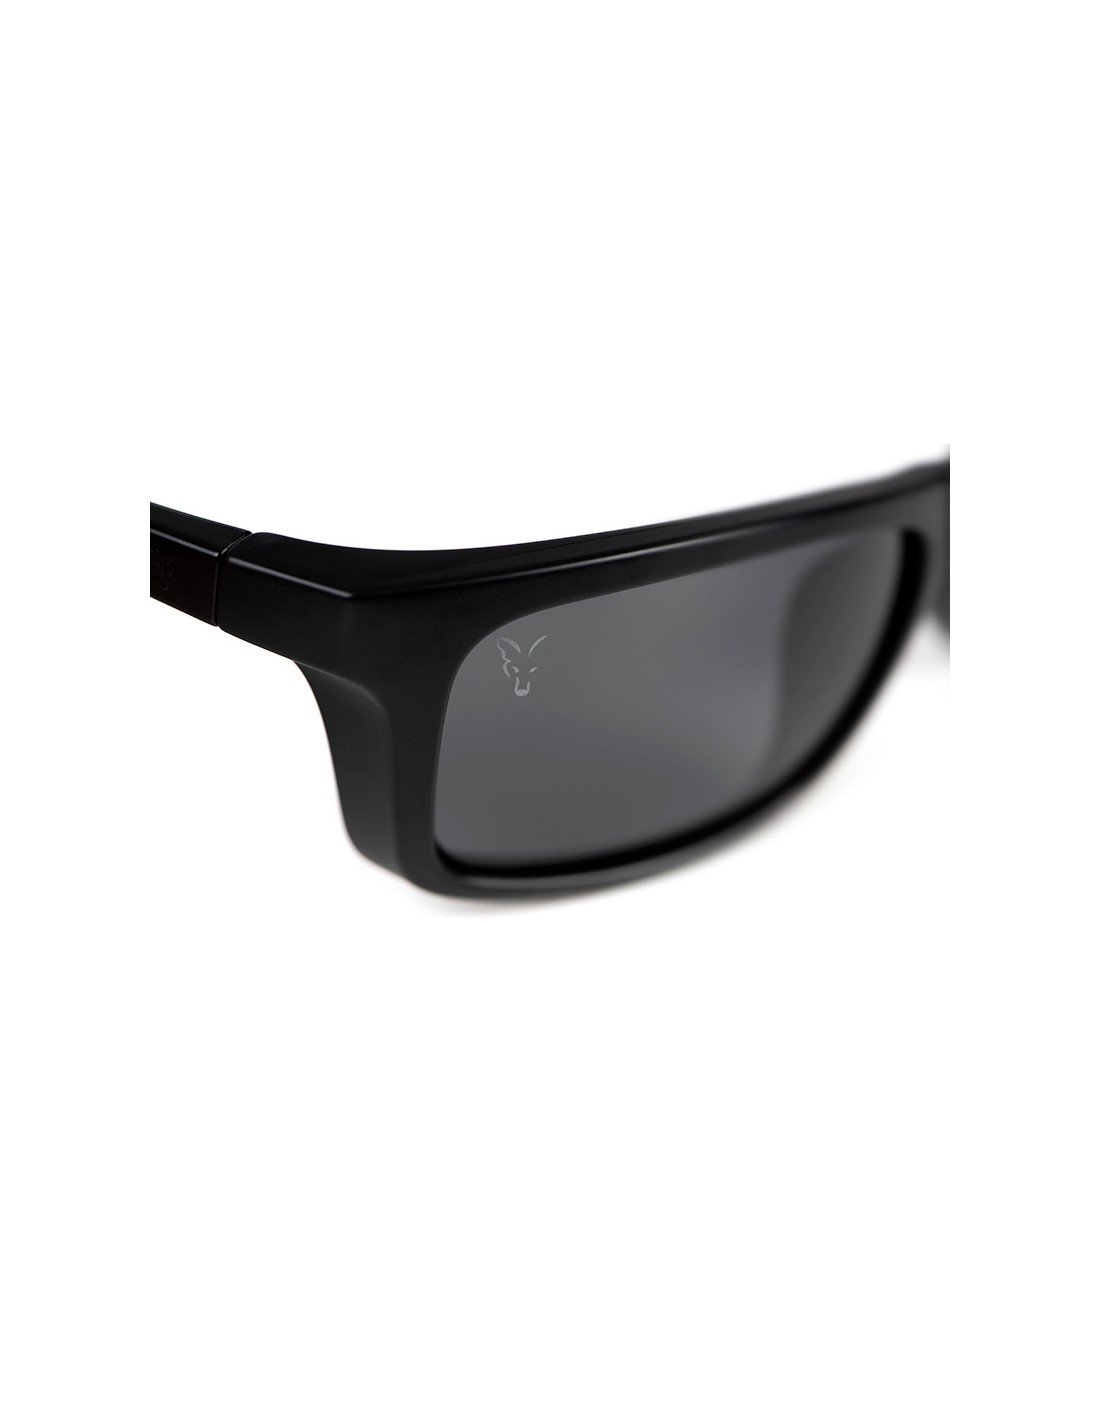 Fox Collection Wraps Black/Orange – Grey Lens слънчеви очила